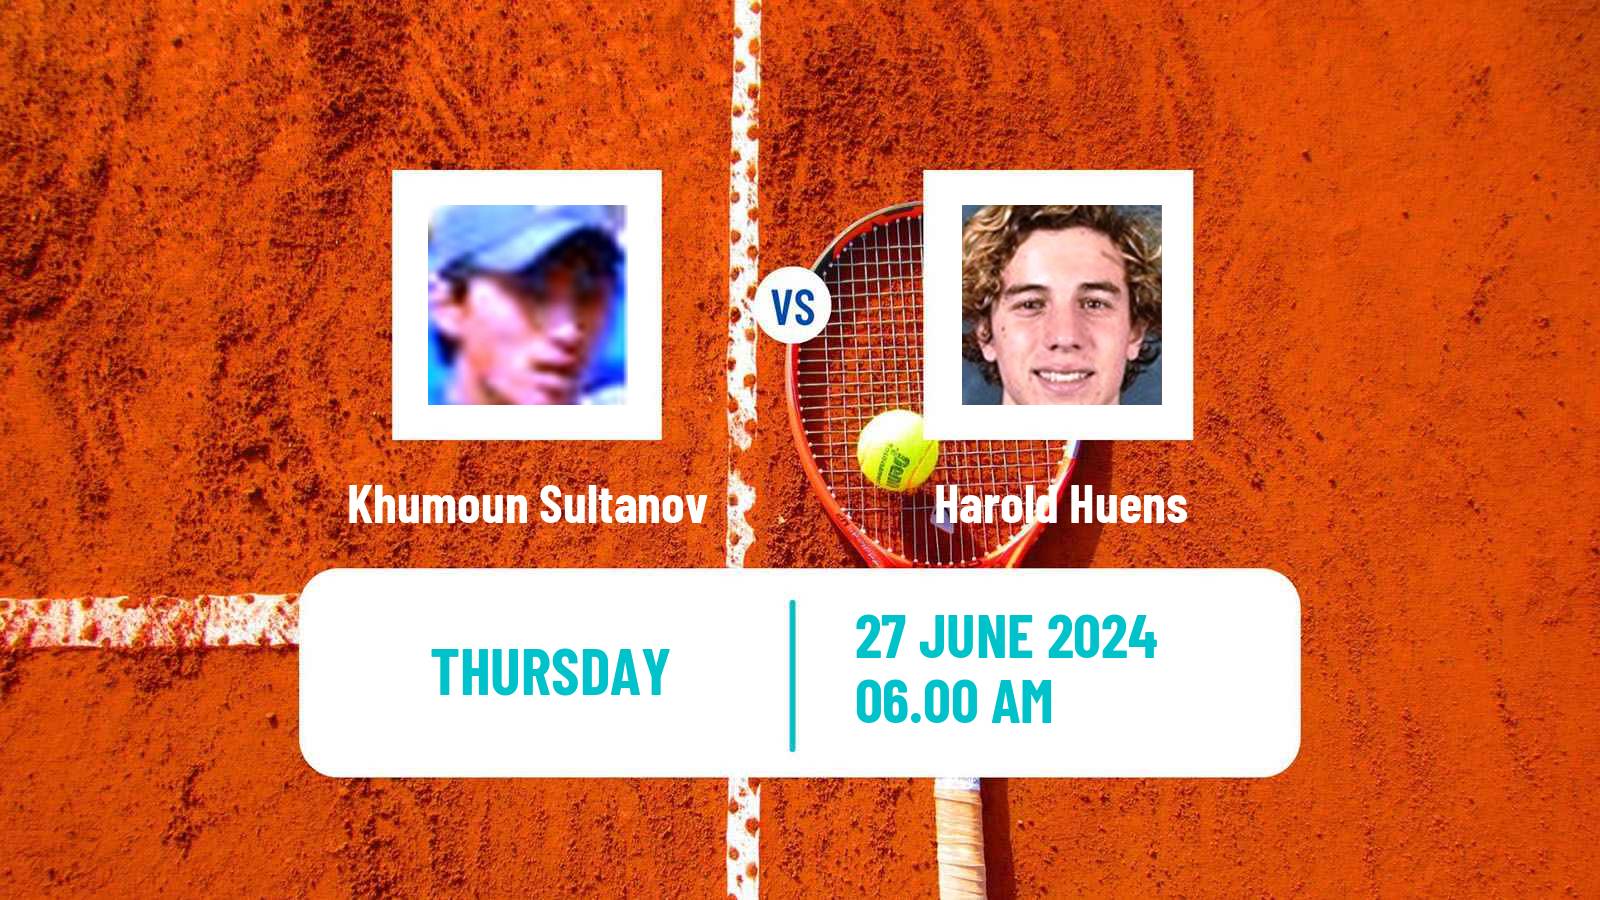 Tennis ITF M25 Brussels Men Khumoun Sultanov - Harold Huens